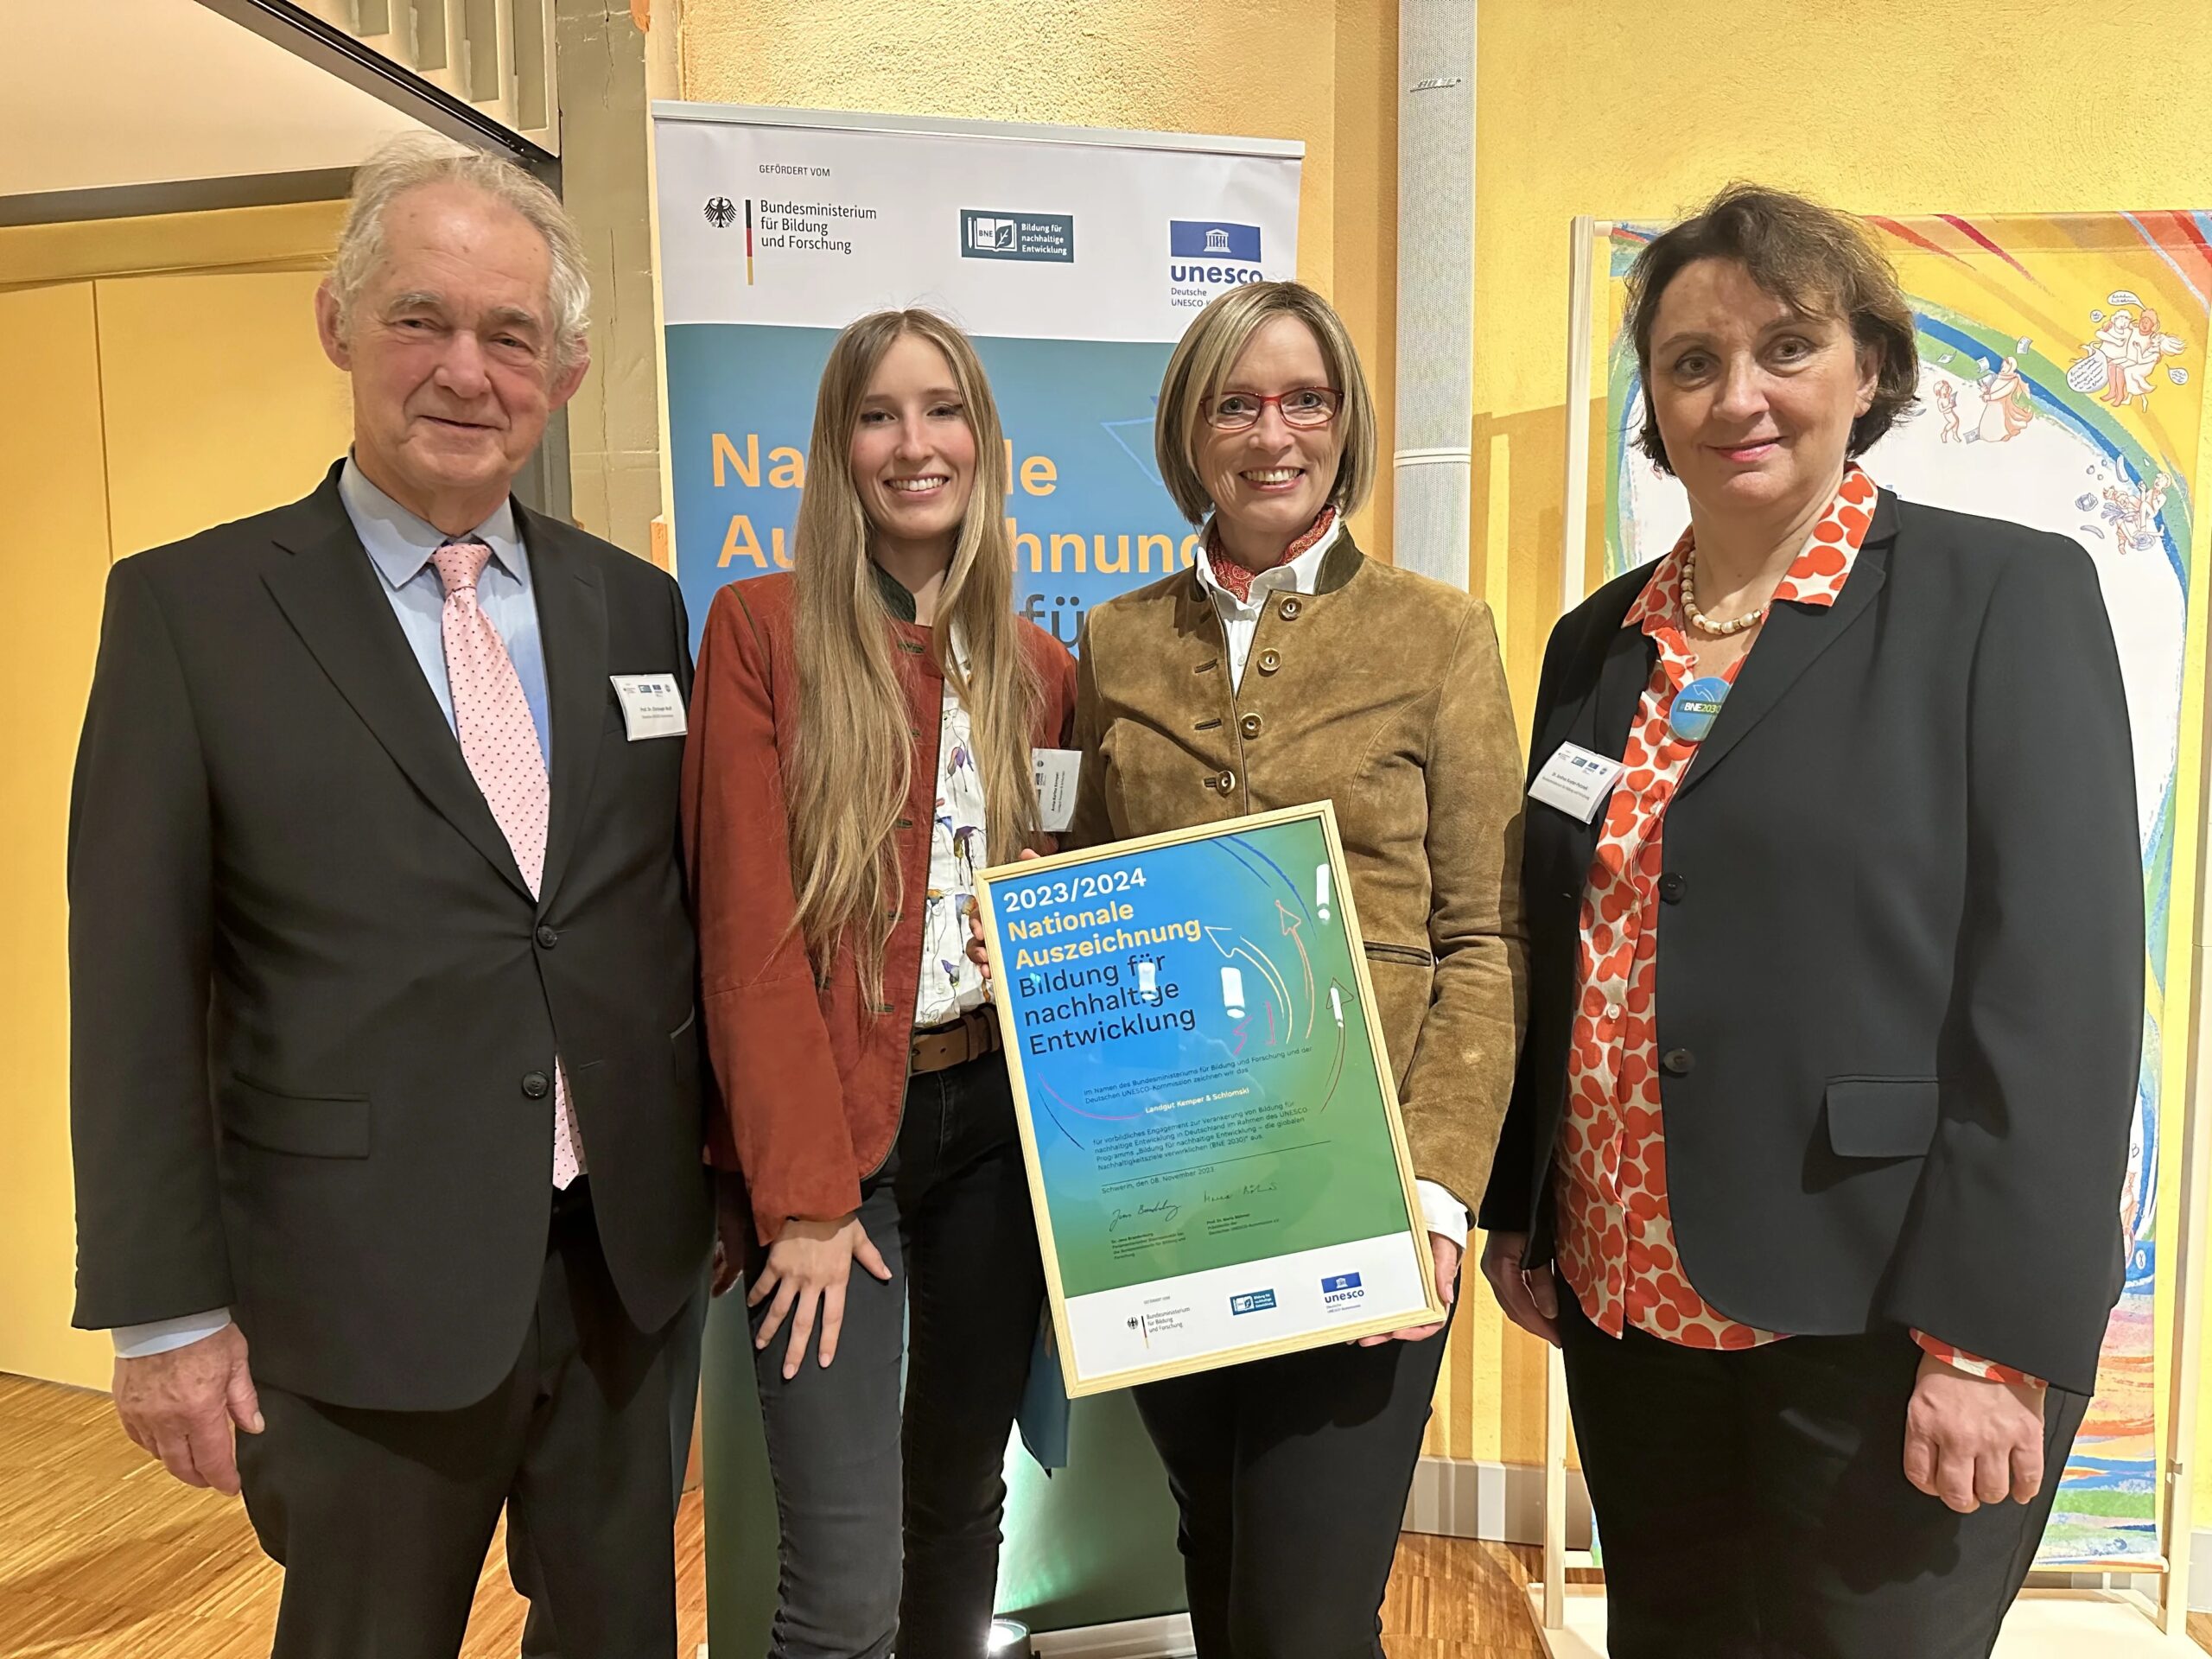 Nationale Auszeichnung – Bildung für nachhaltige Entwicklung für das Landgut Kemper & Schlomski in Liebstadt